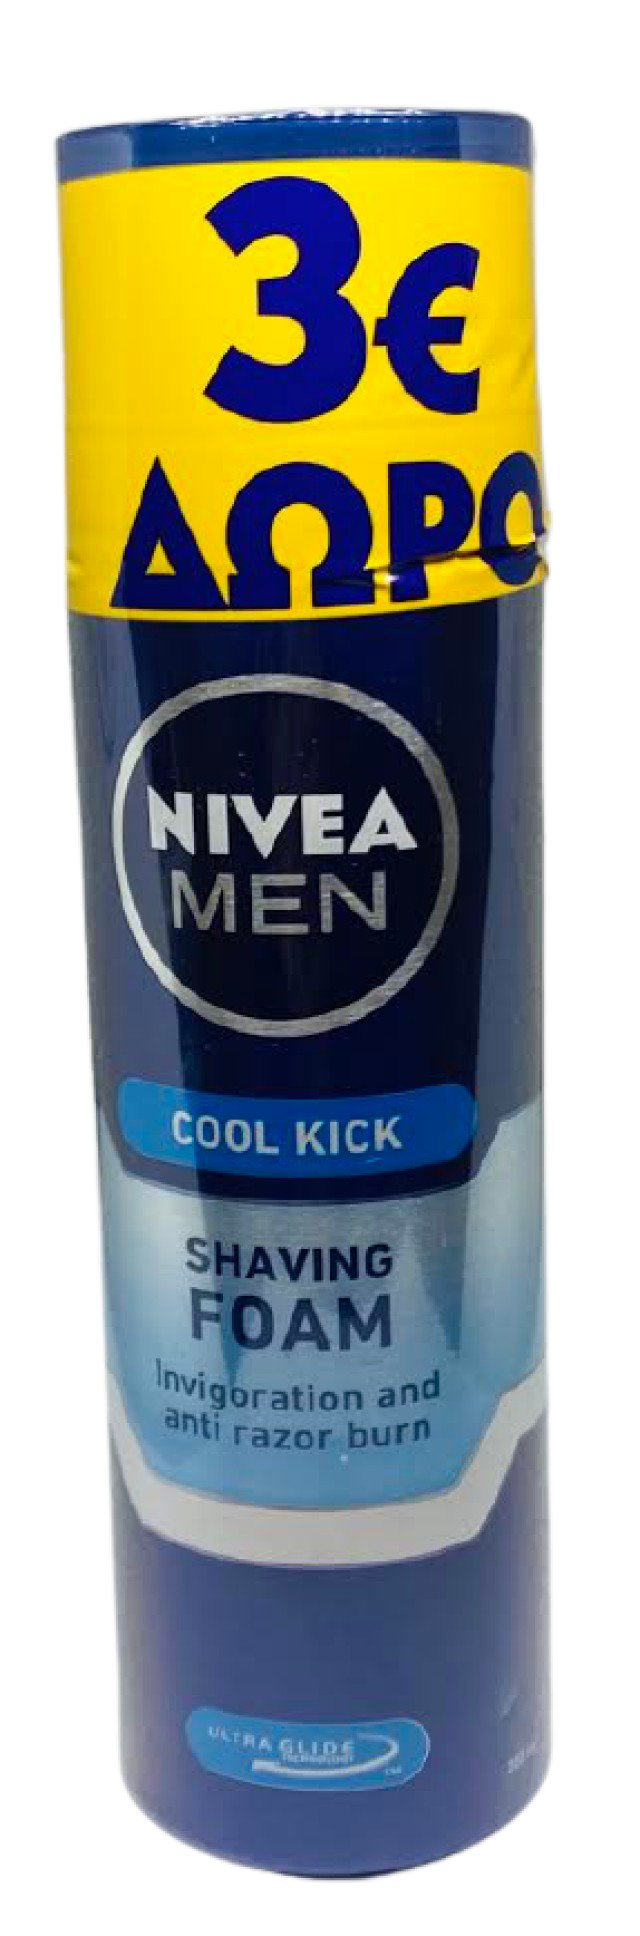 Nivea Men PROMO Cool Kick Shaving Foam Αφρός Ξυρίσματος 2x200ml -3€ Επί Της Τιμής